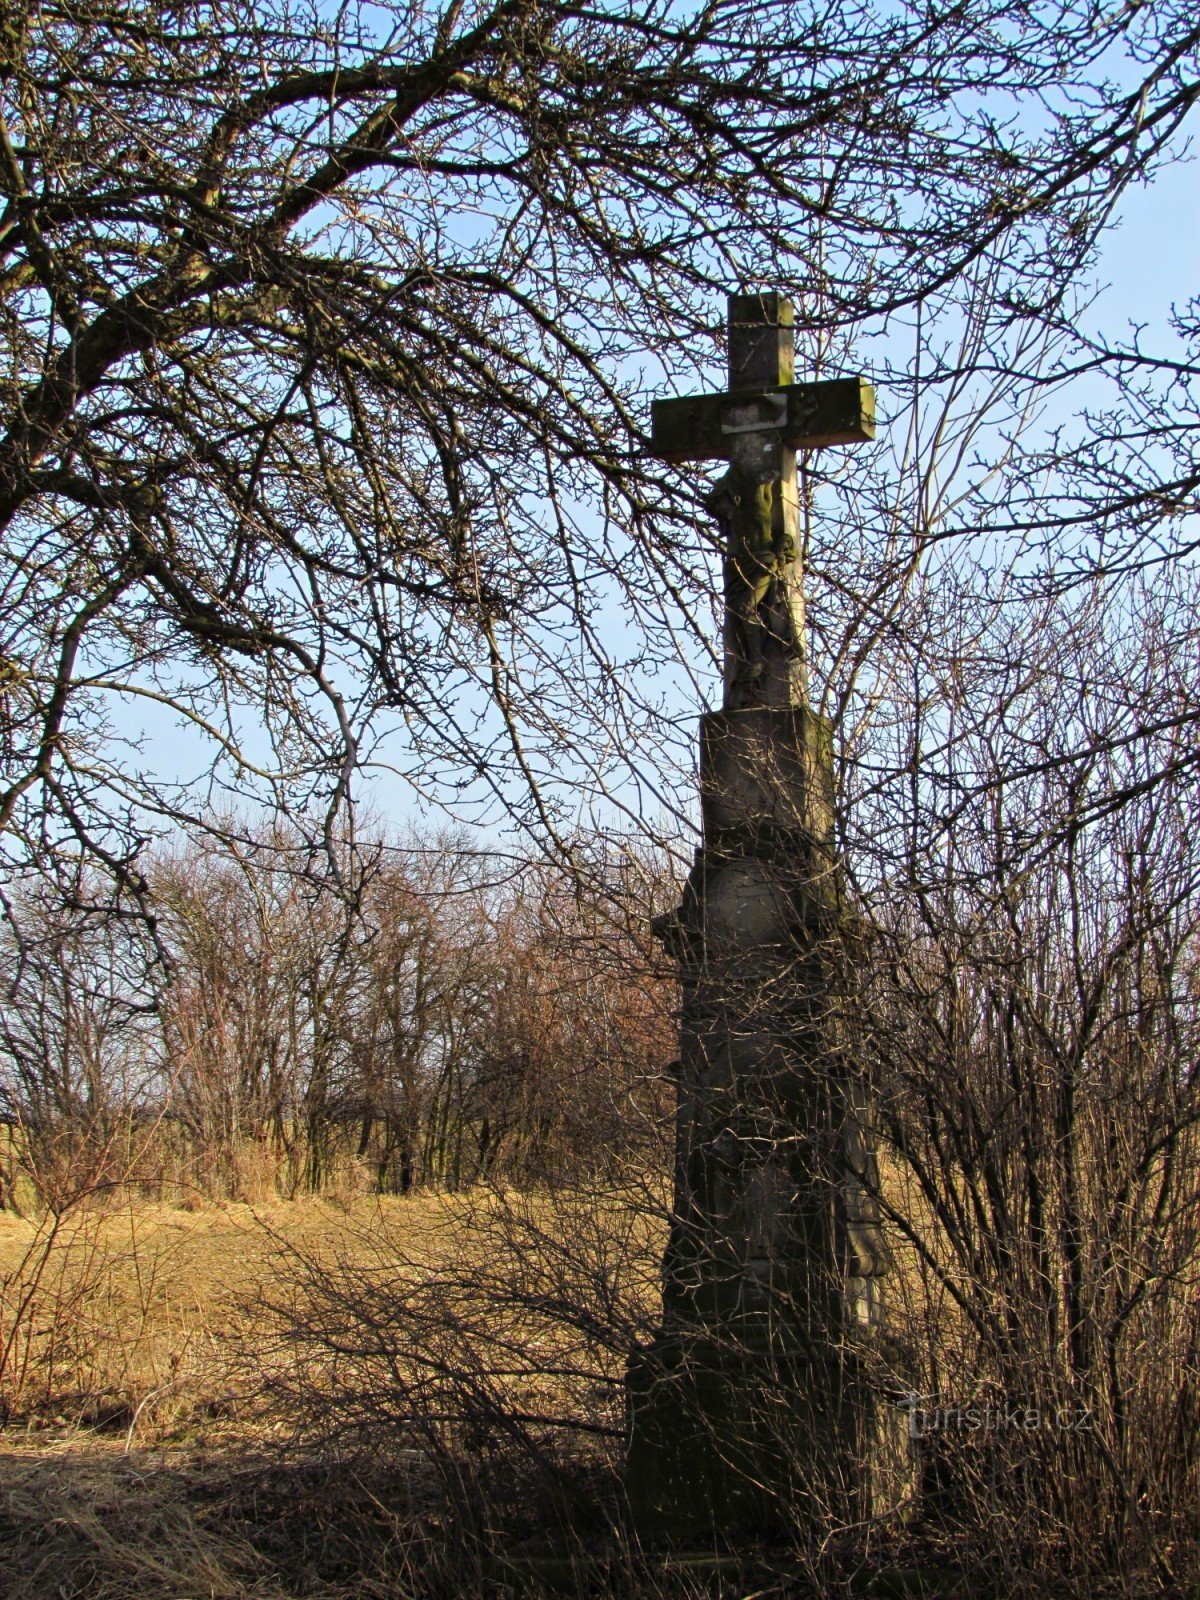 Olšovec - små monument i byn